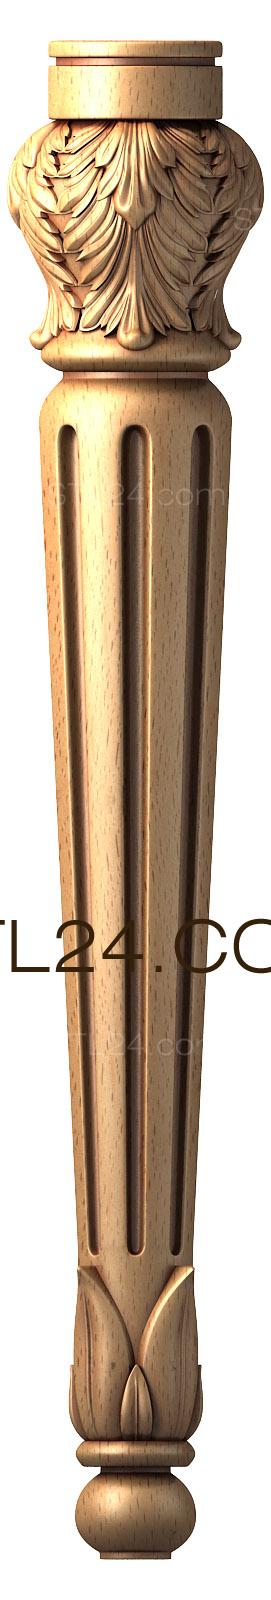 Ножки (NJ_0517) 3D модель для ЧПУ станка